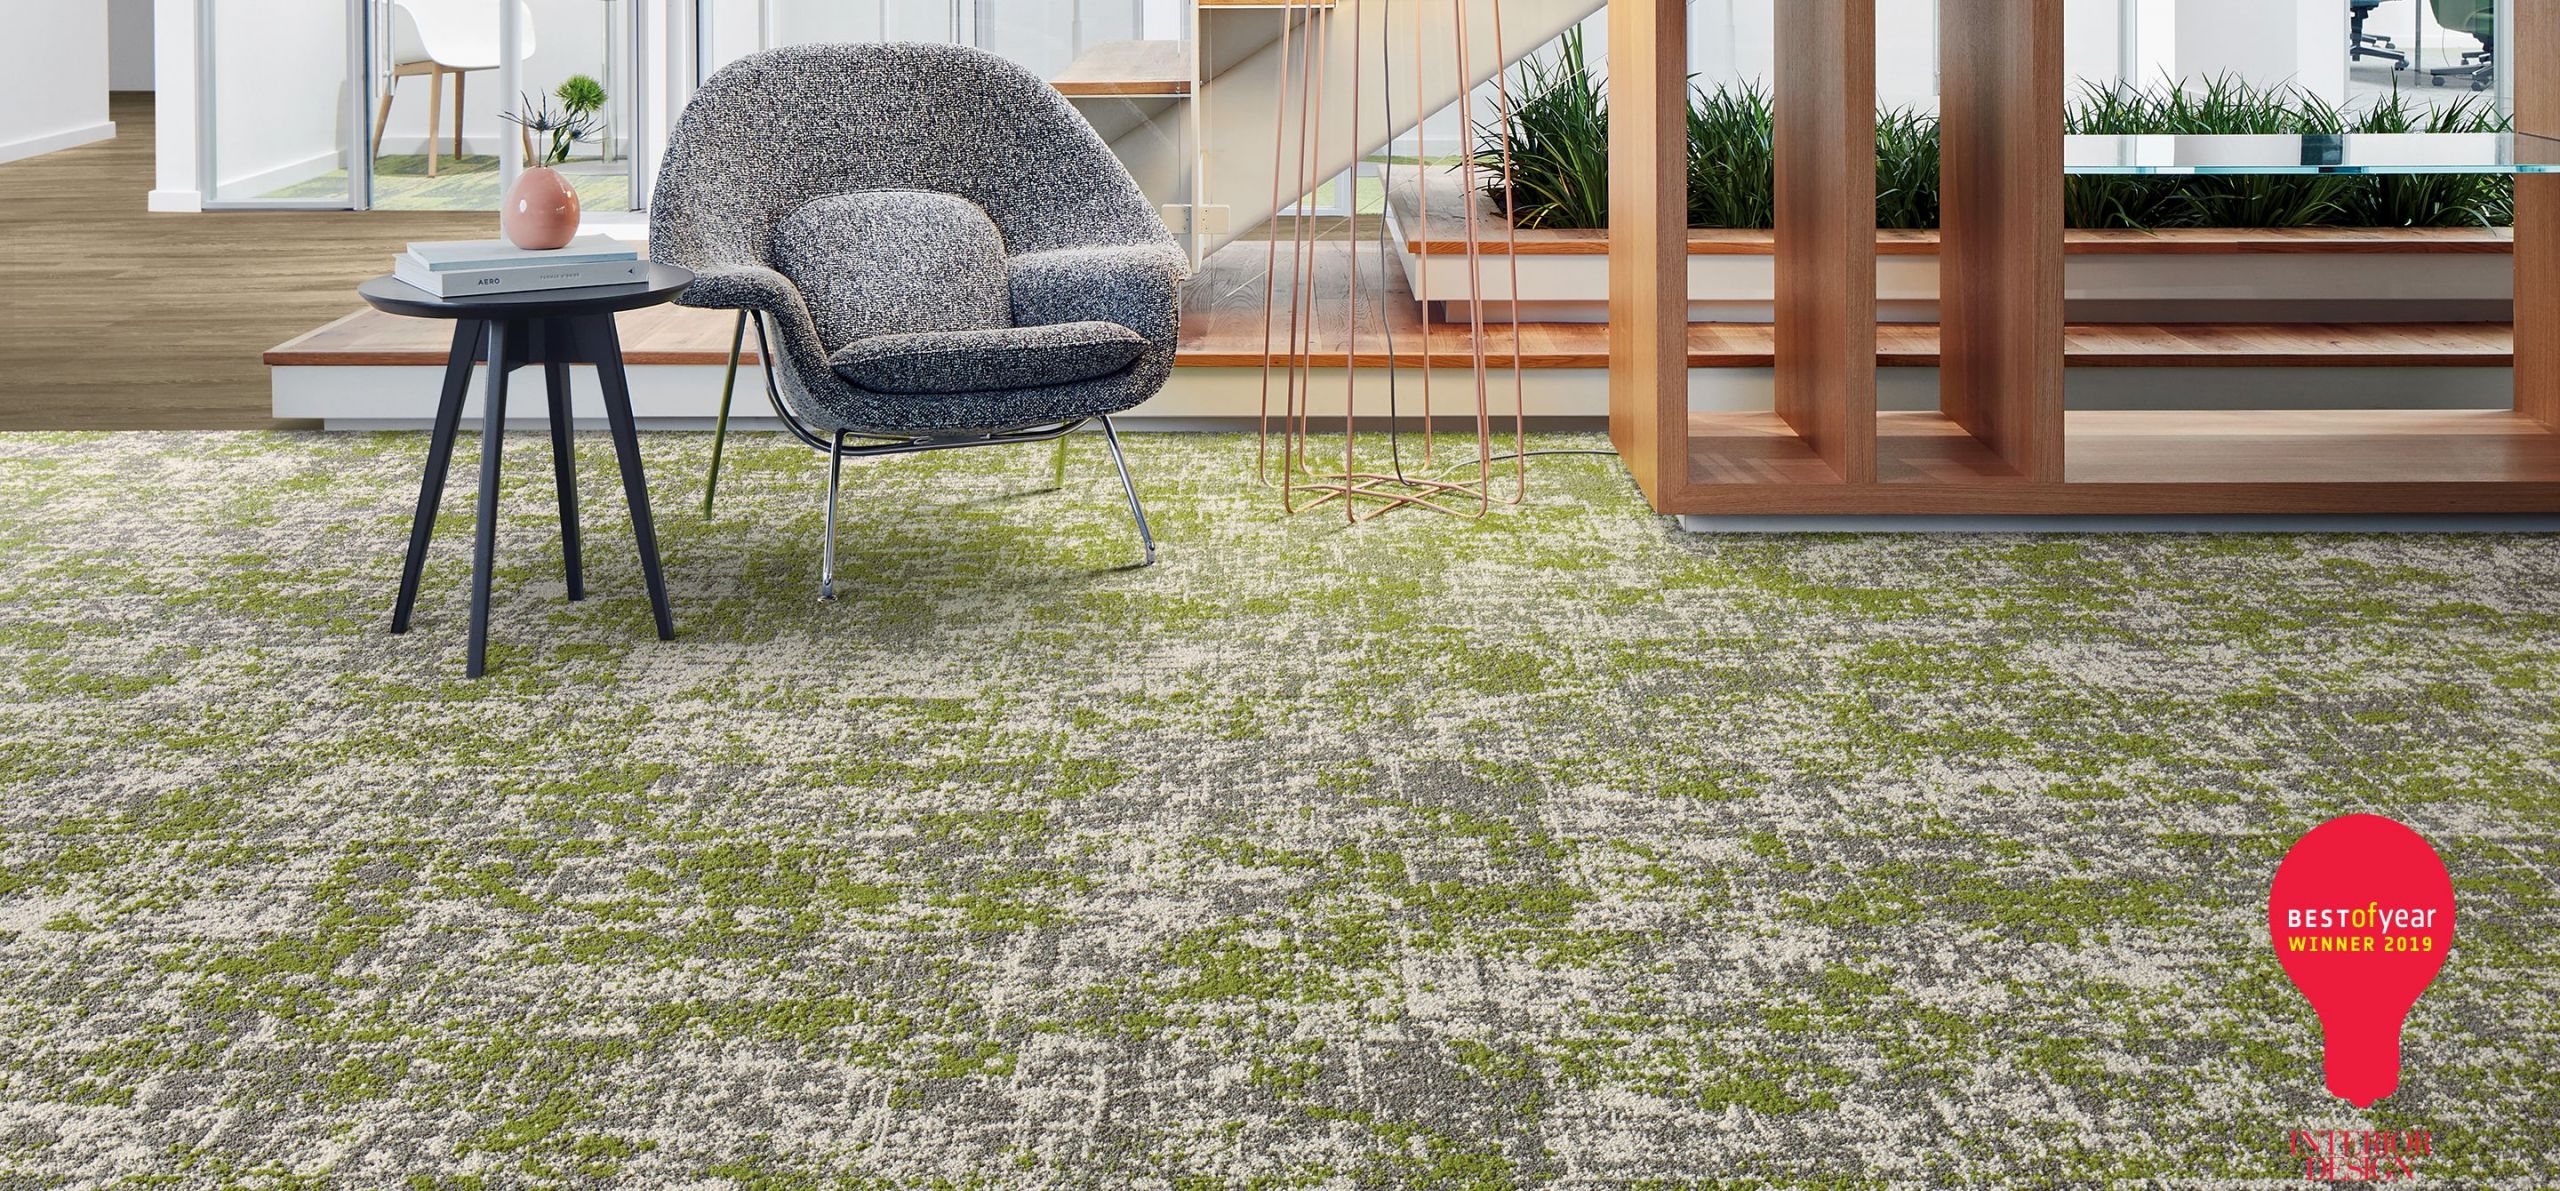 Meubles De Jardin En Palettes Unique Mercial Carpet Tile & Resilient Flooring